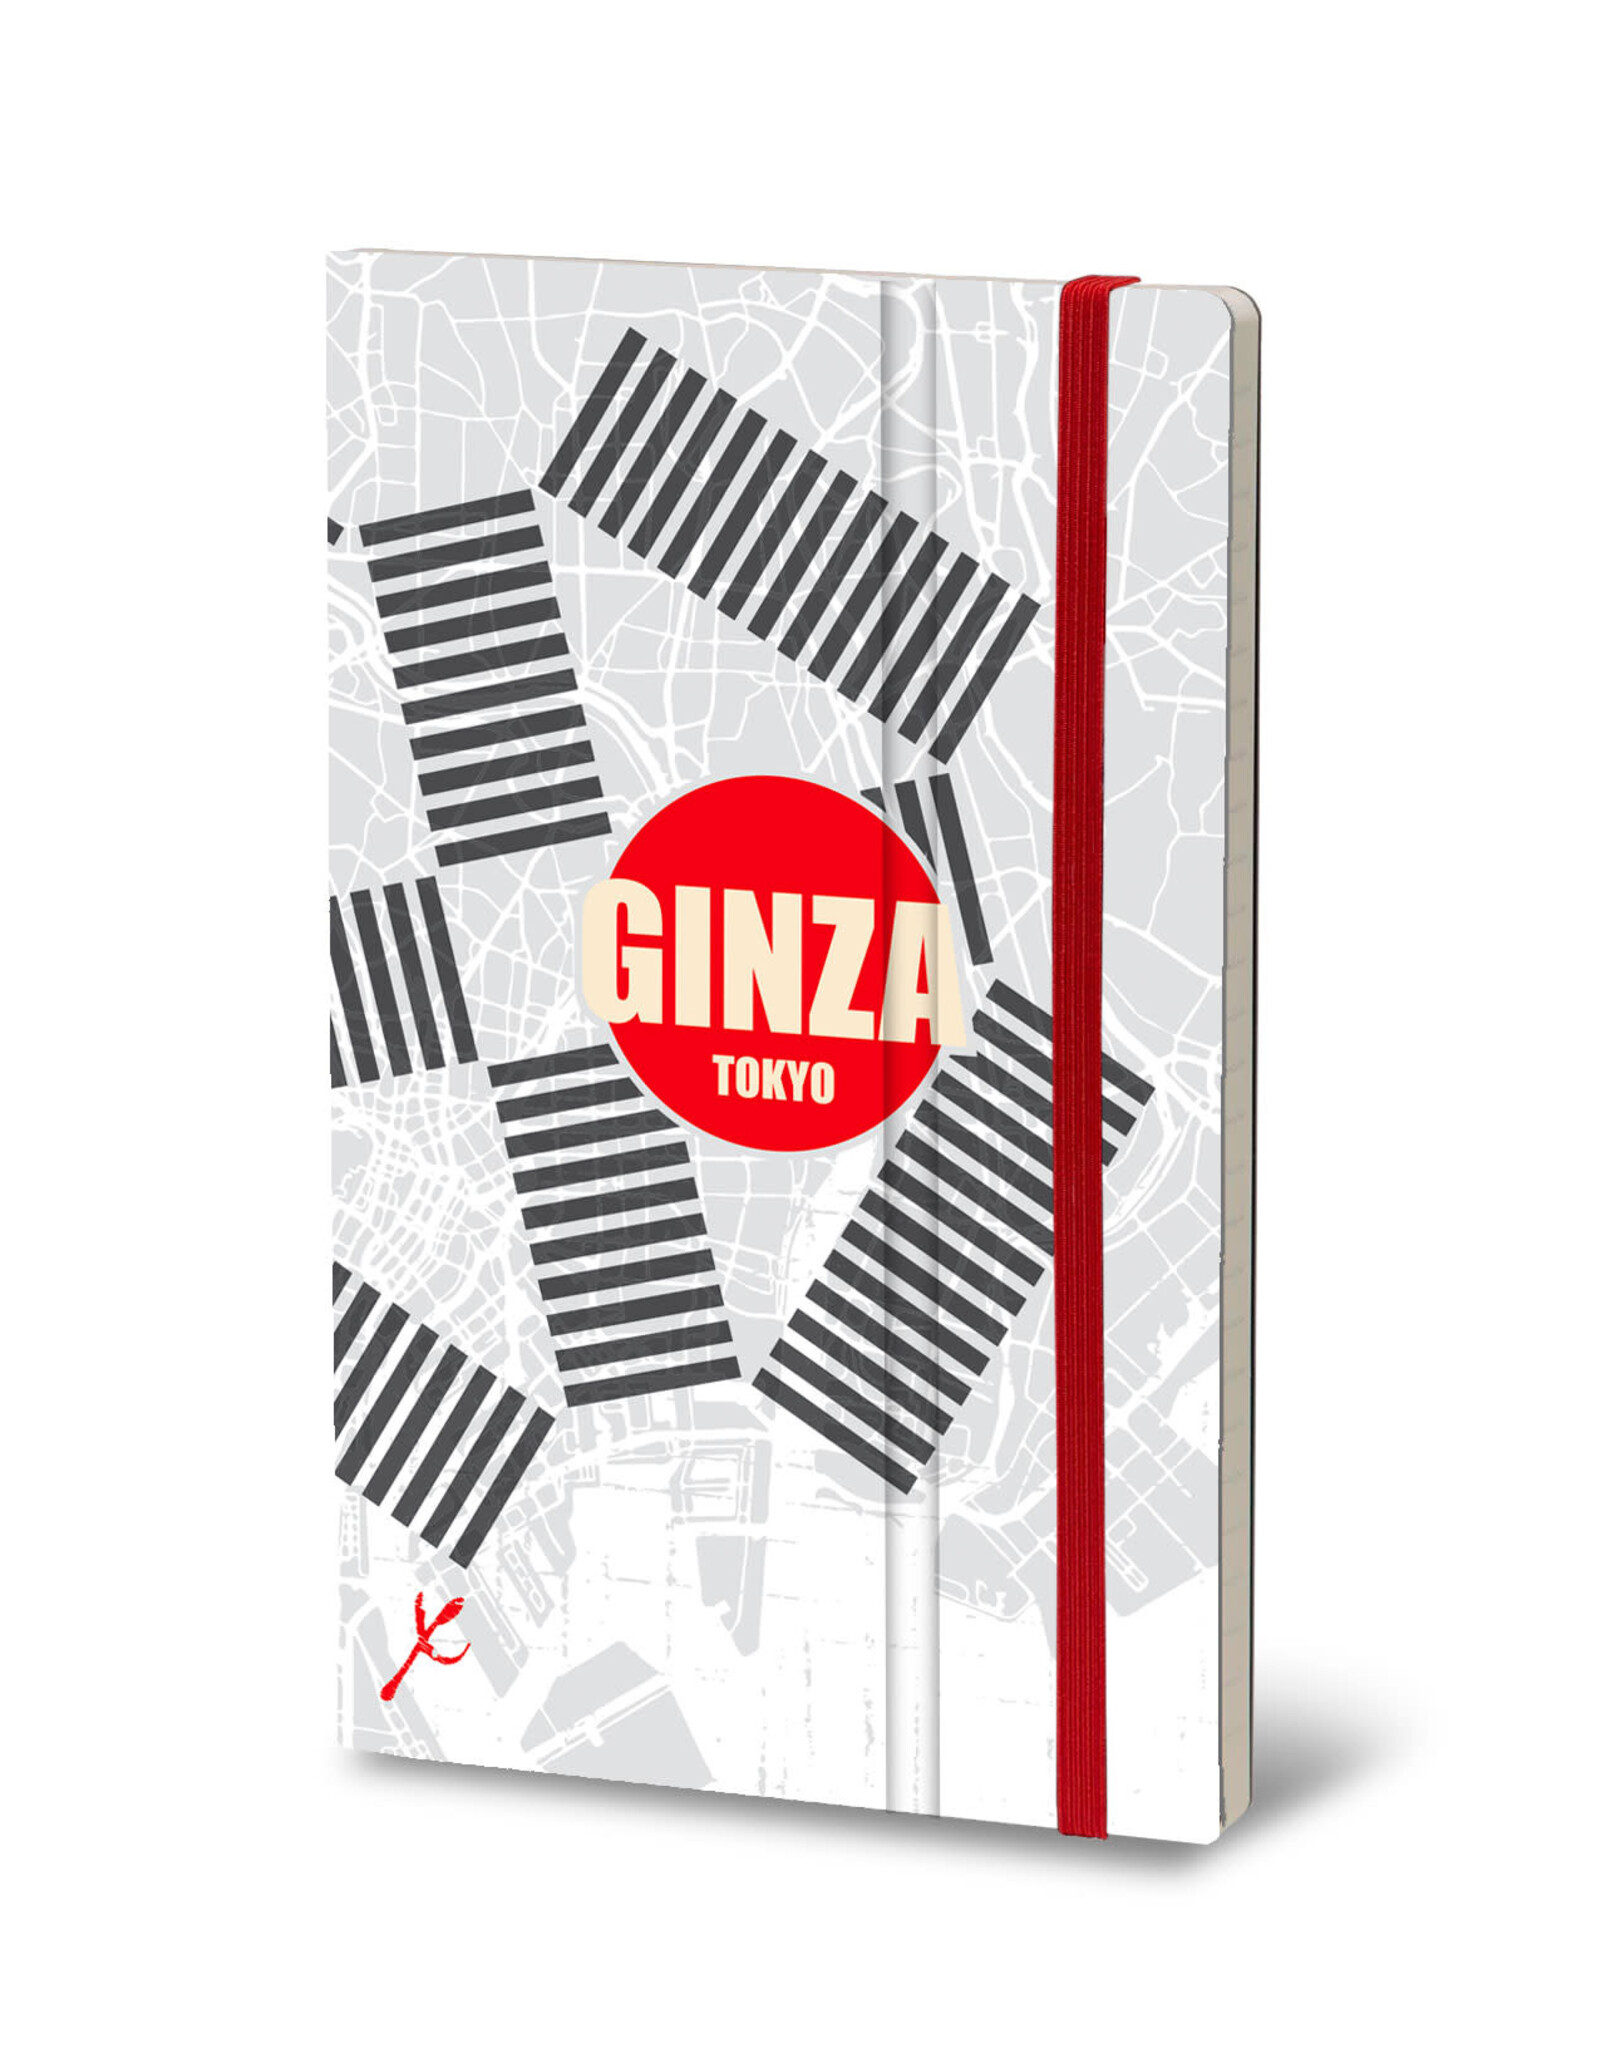 Giuliano Mazzuoli Stifflex Notebook,  13 X 21 Cm,Tokyo - Ginza